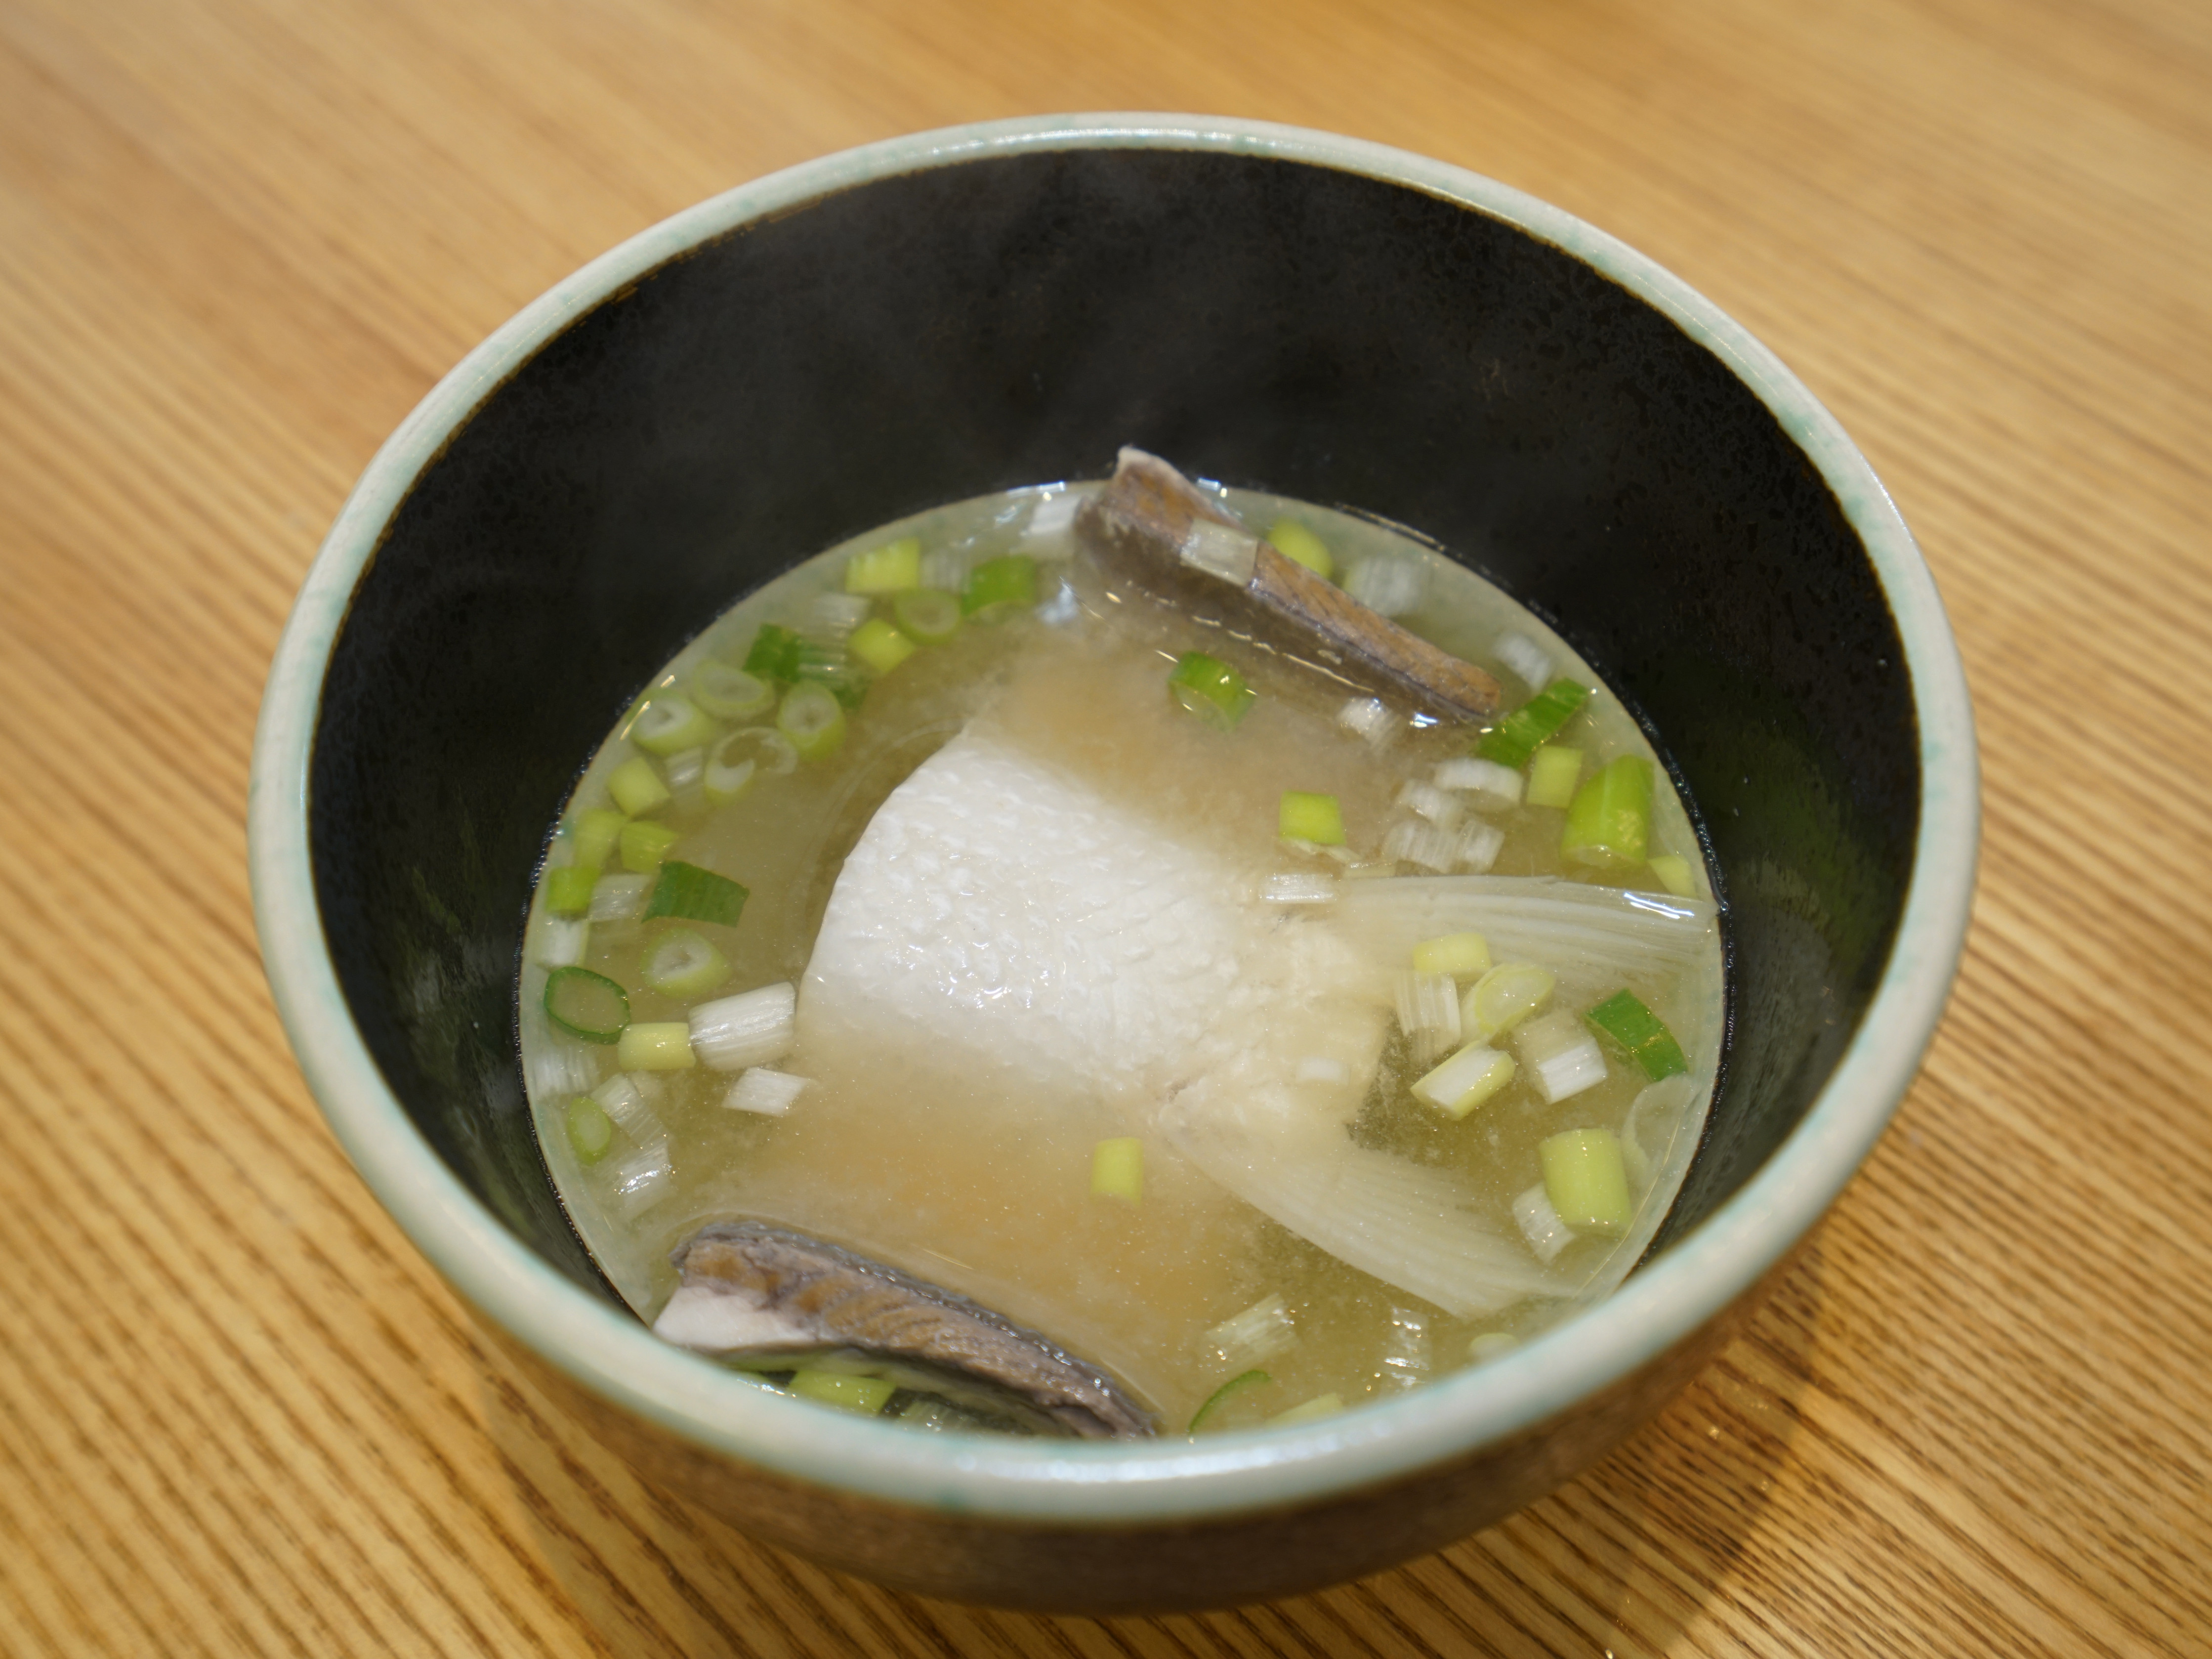 虱目魚味噌湯。一人份魚湯料理!